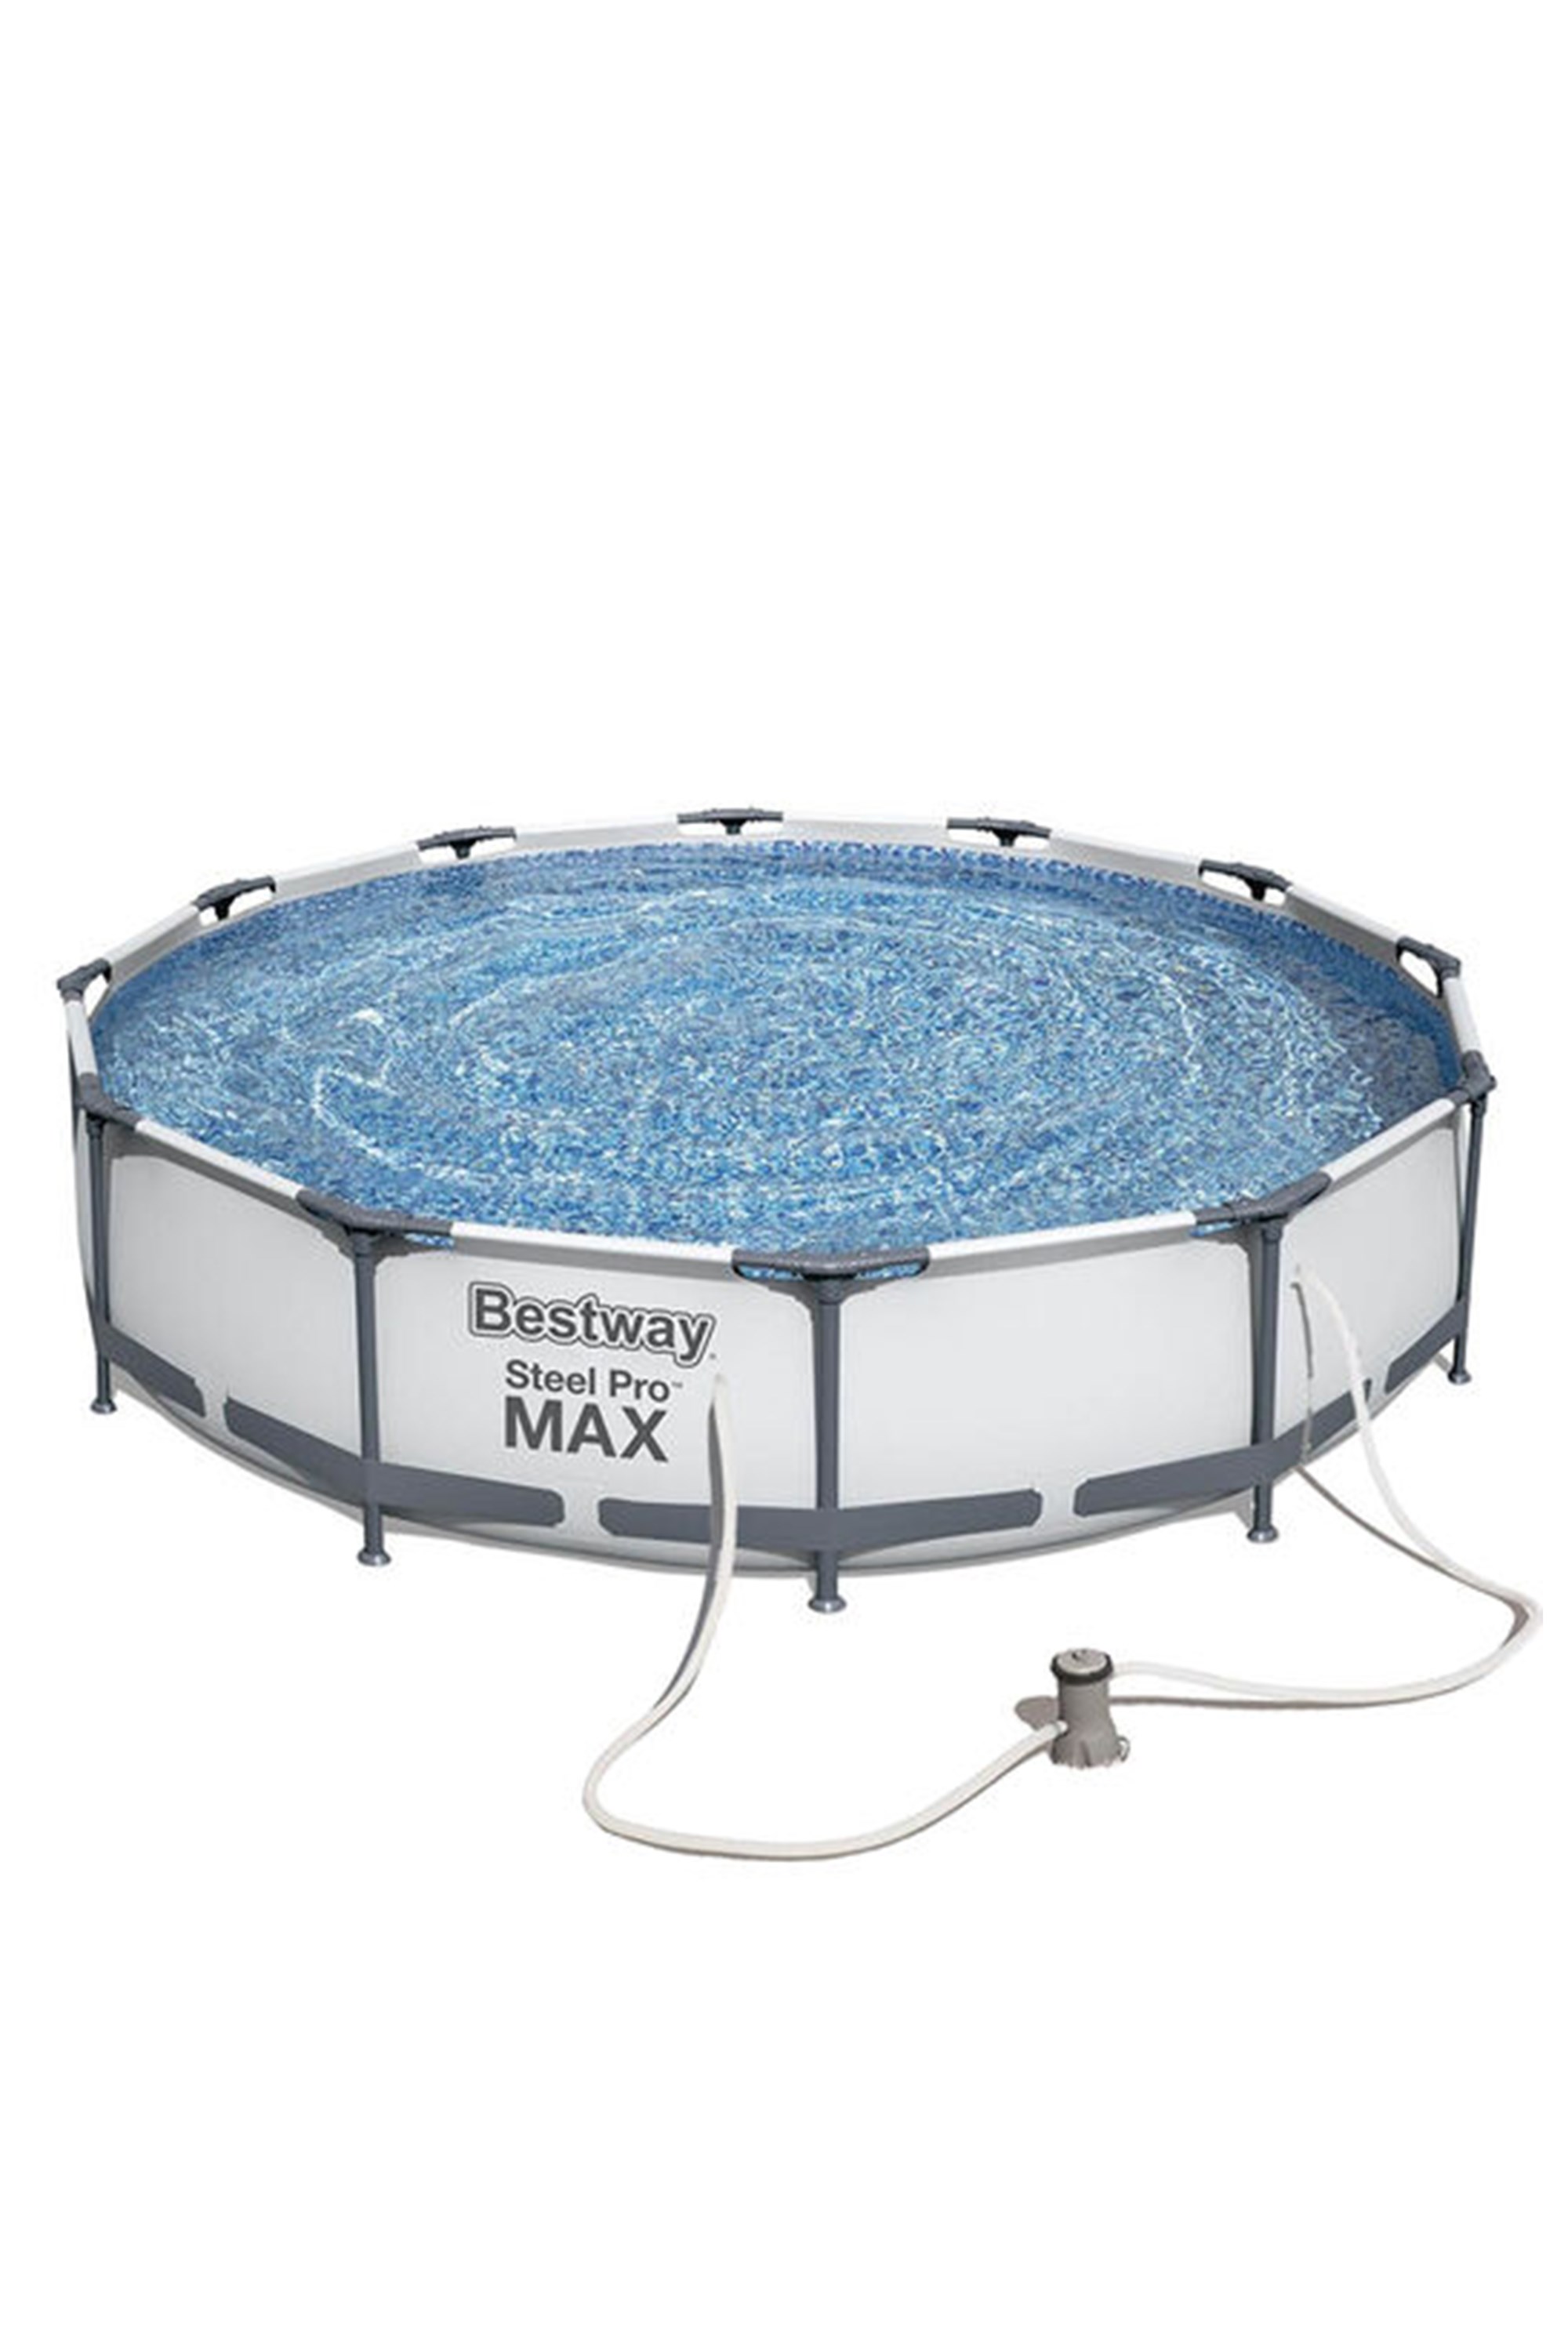 Steel Pro Max 12 X 30 Pool Set -